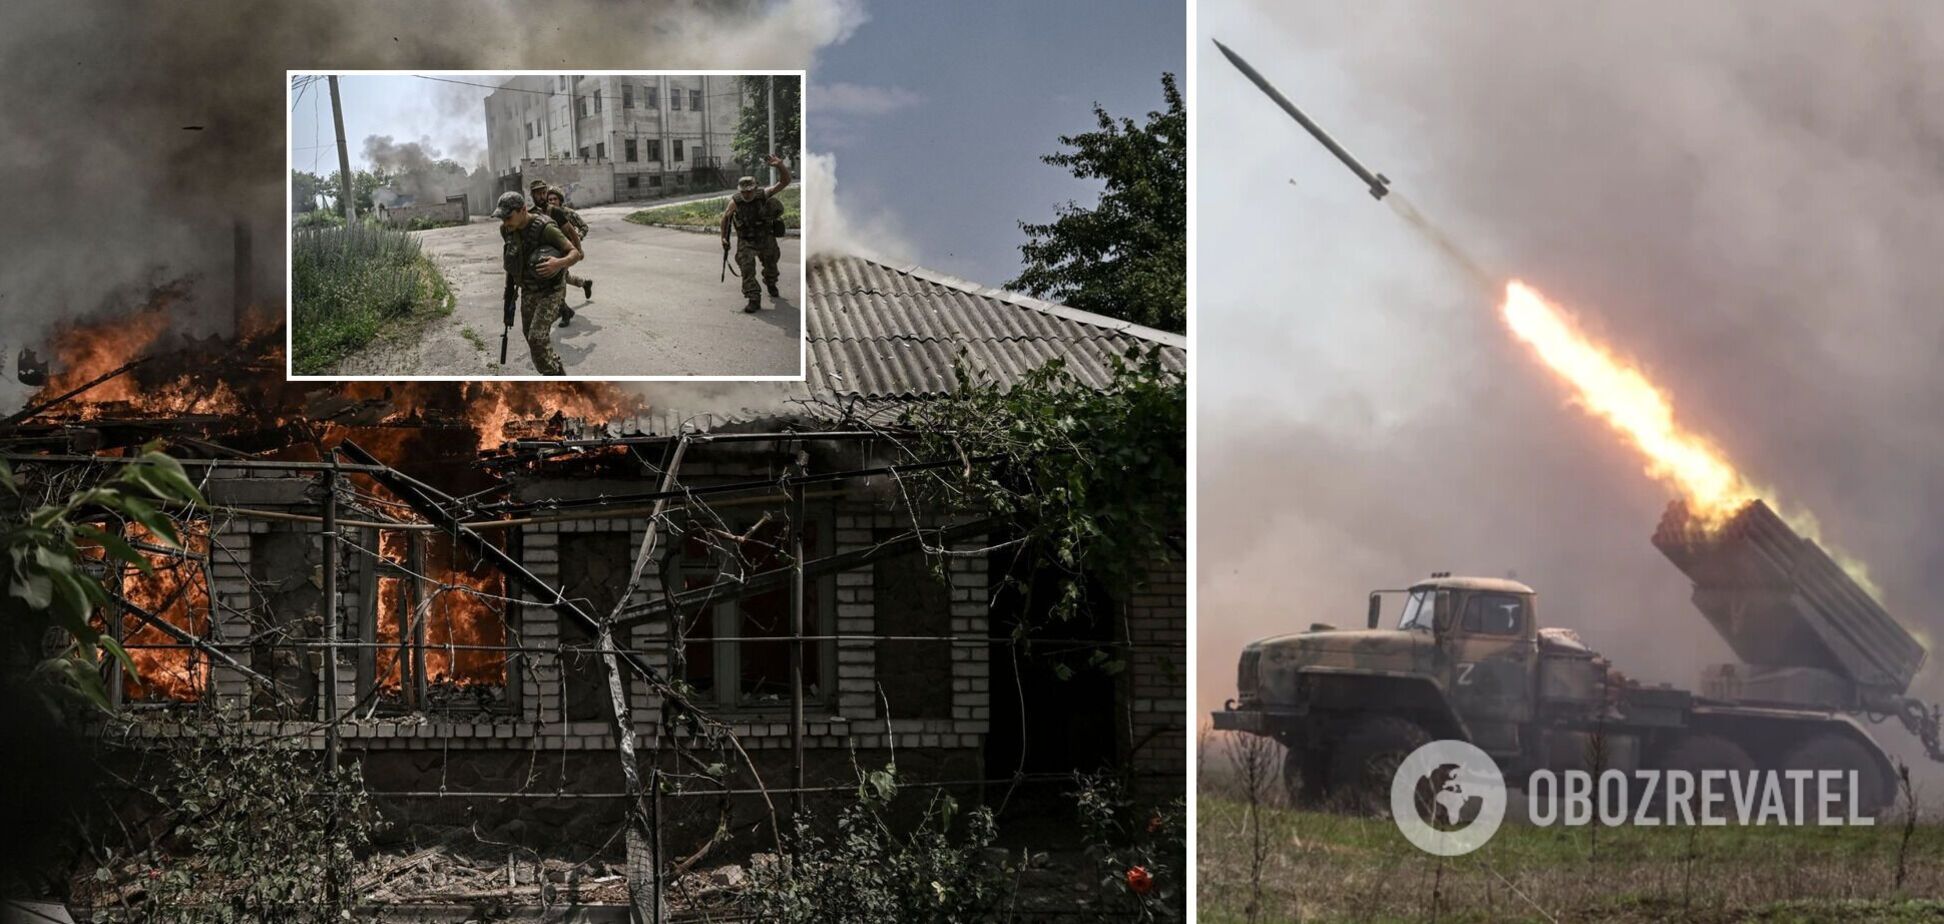 Журналисты засняли тяжелые обстрелы оккупантами Лисичанска. Видео 18+